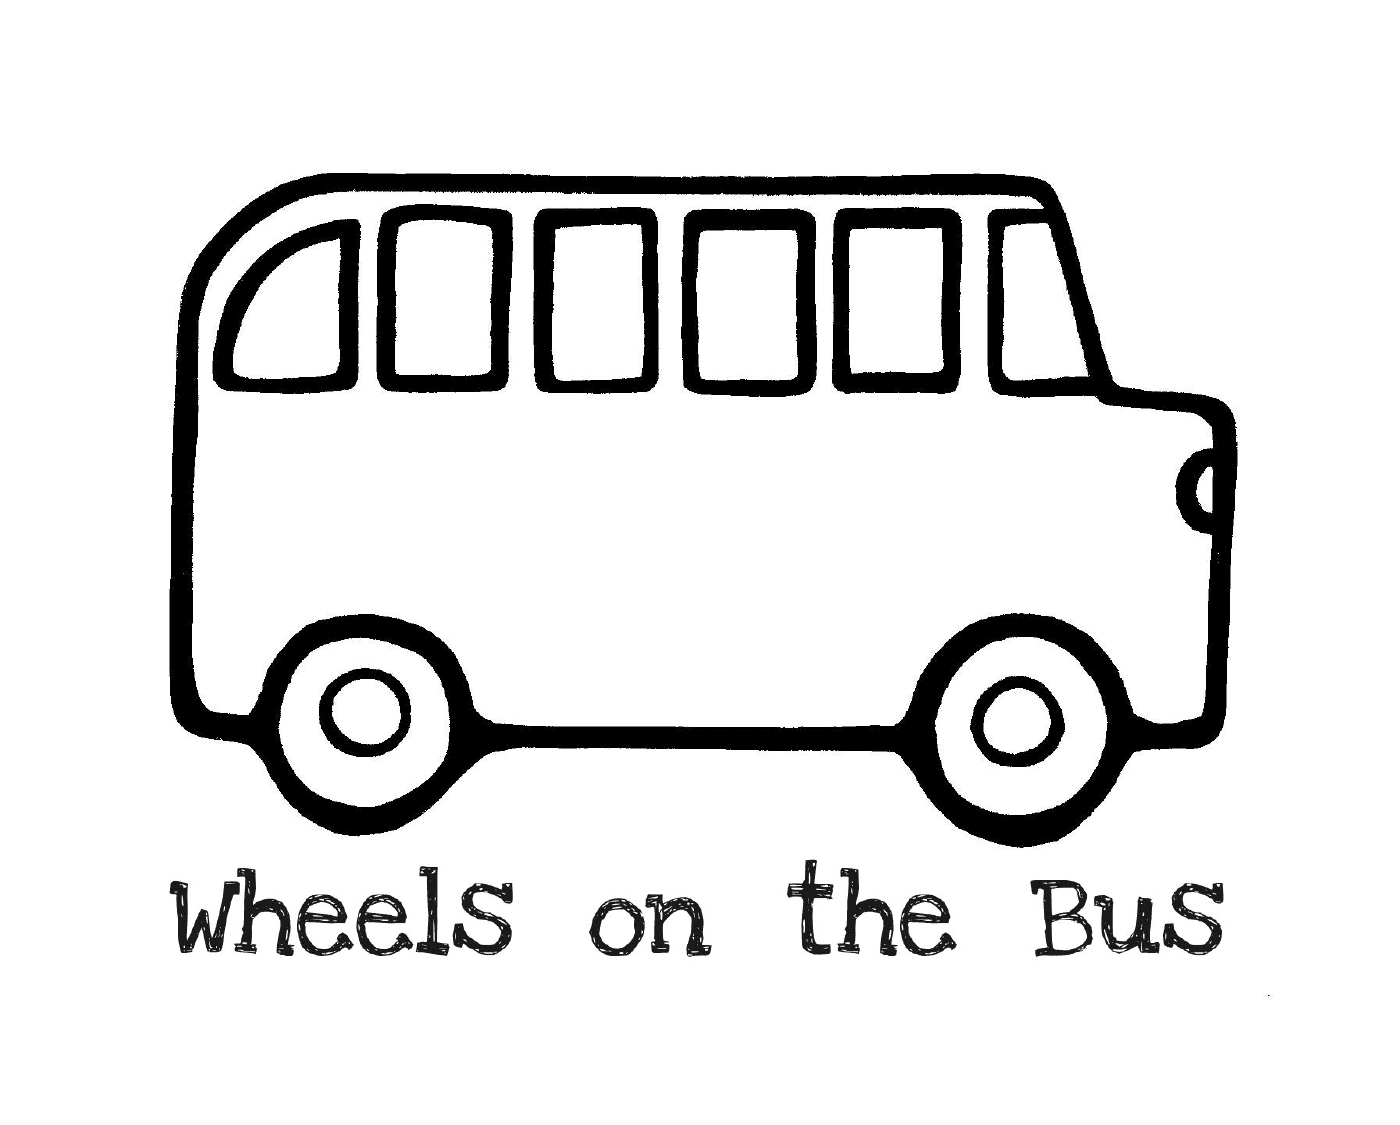   Un bus avec les paroles Les roues du bus 